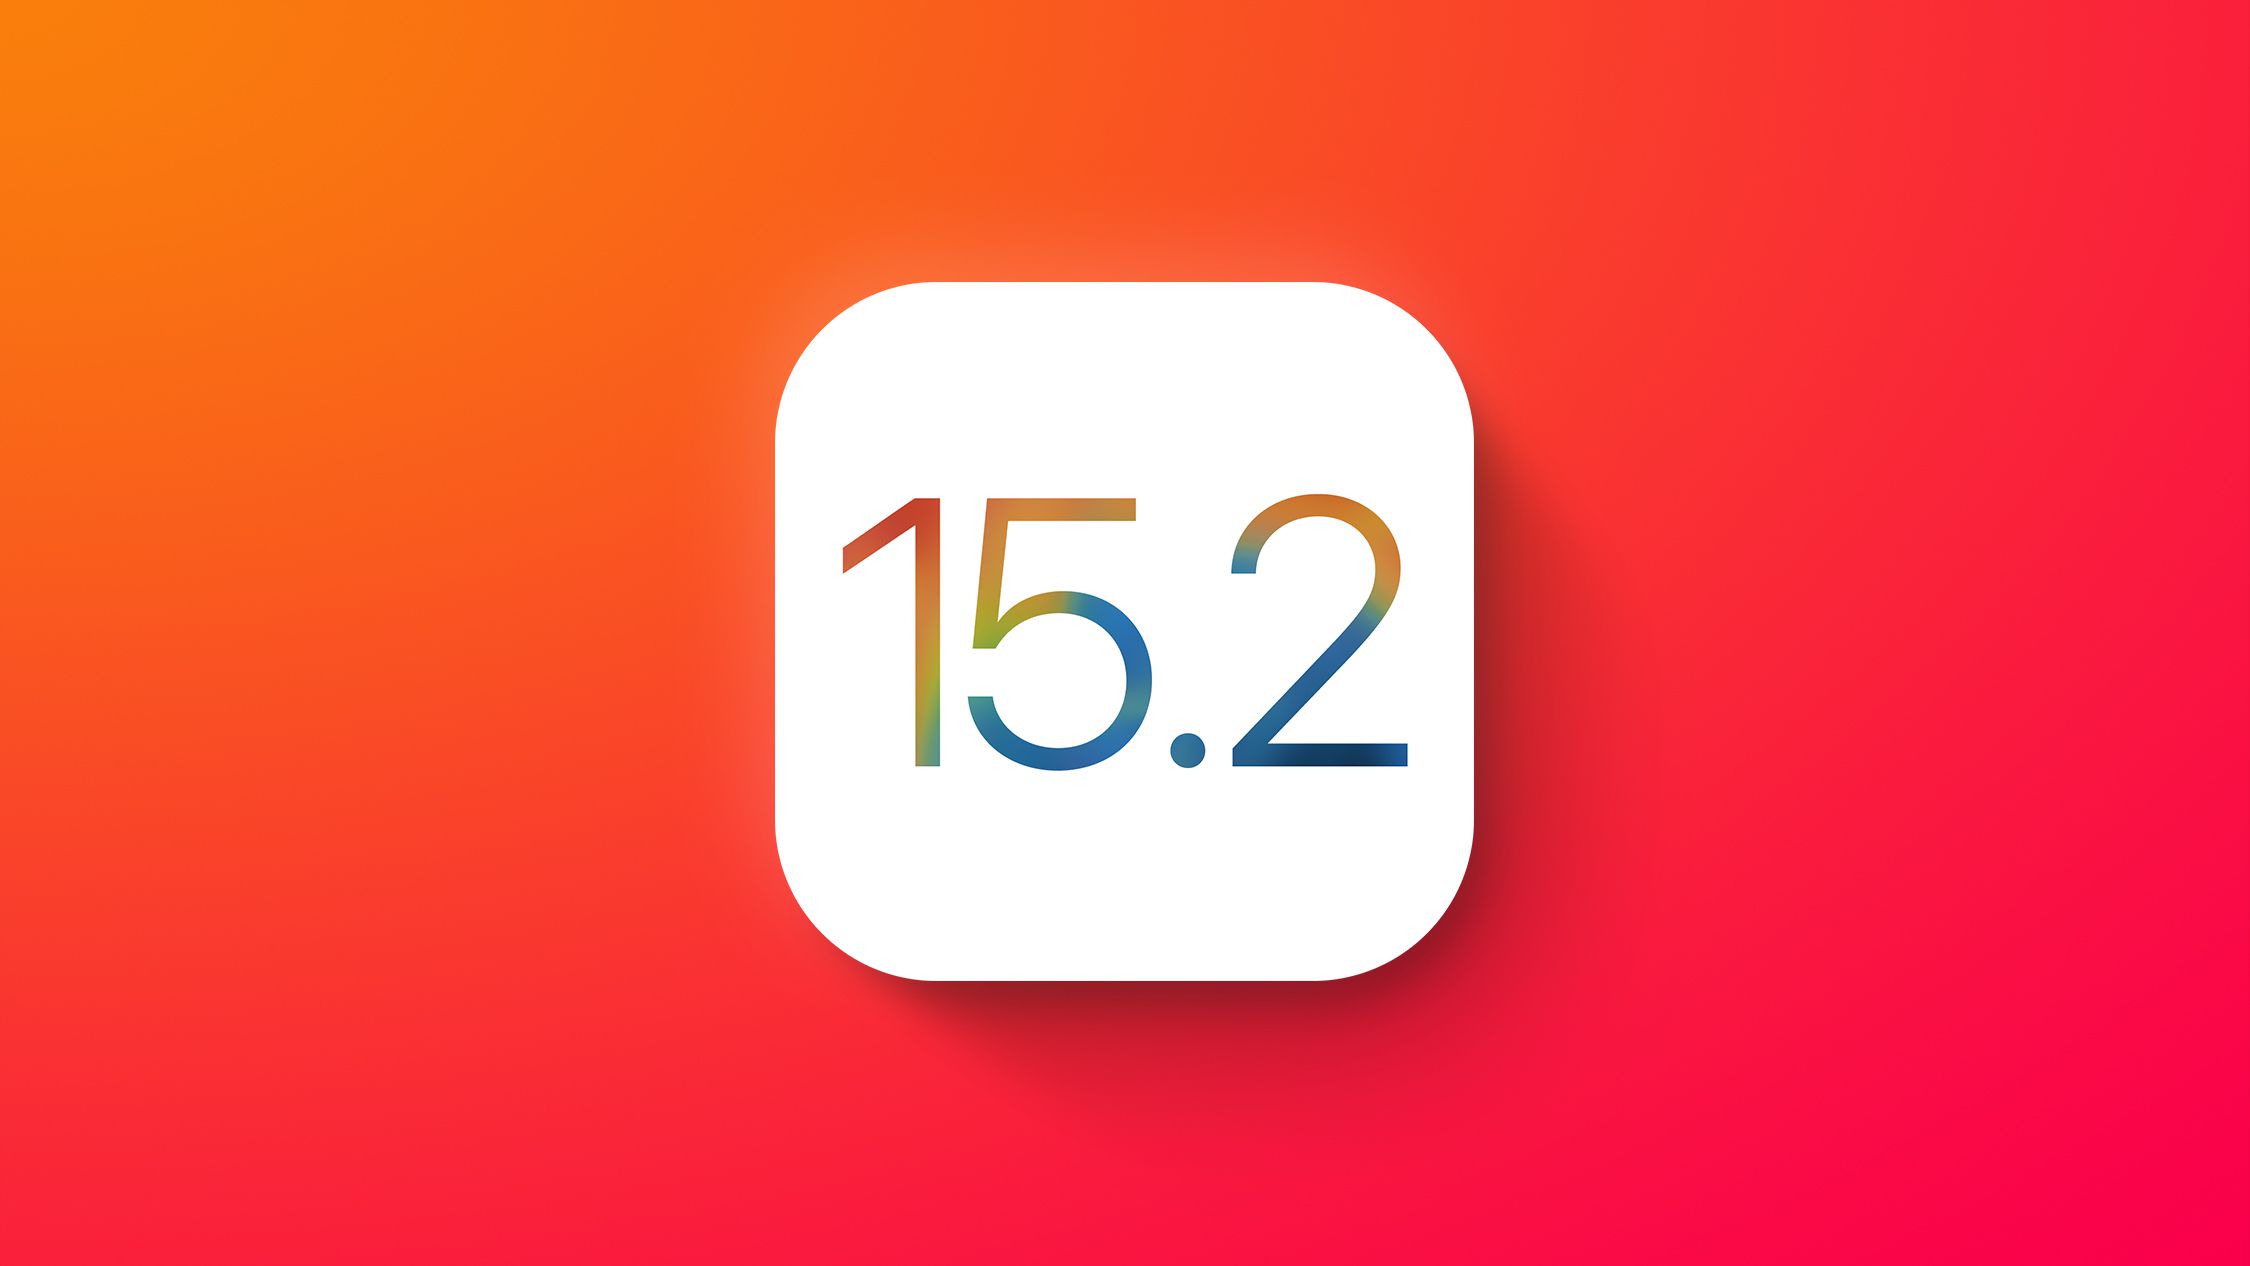 iOS 15.2